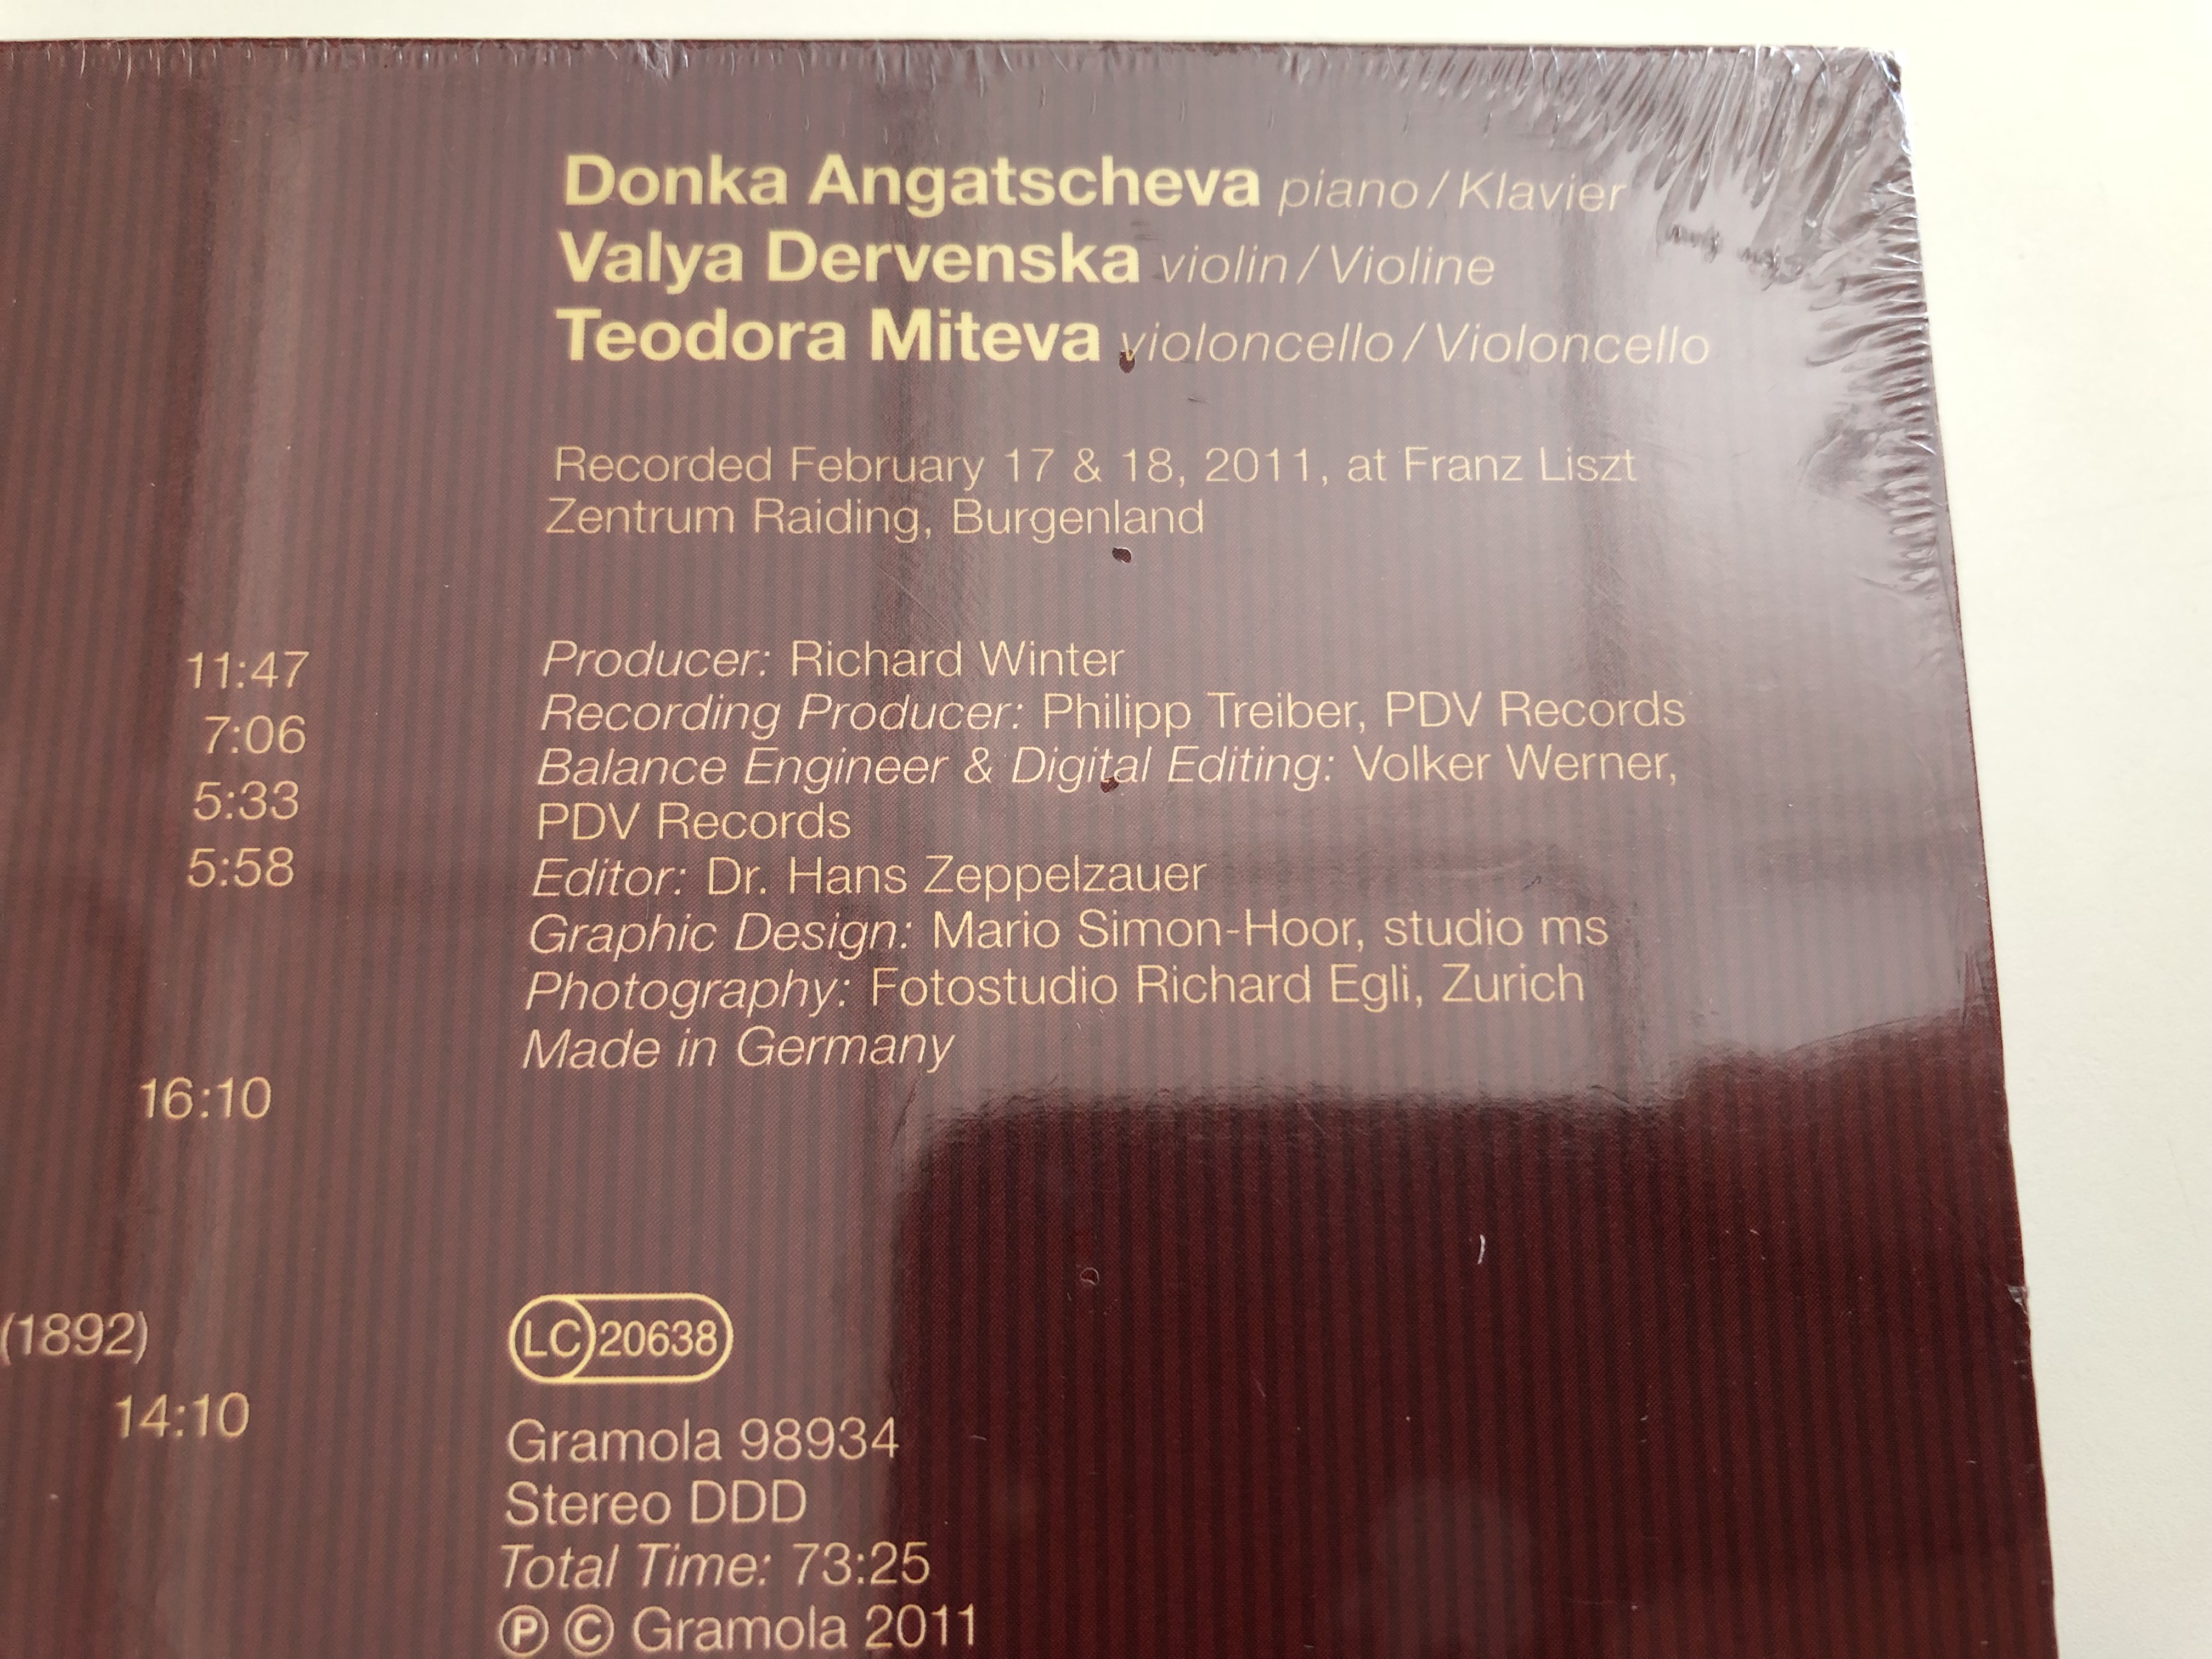 trio-d-ante-vienna-chopin-liszt-rachmaninoff-schostakowitsch-recorded-at-franz-liszt-zentrum-raiding-bonus-dvd-making-of-audio-cd-2011-gramola-4-.jpg